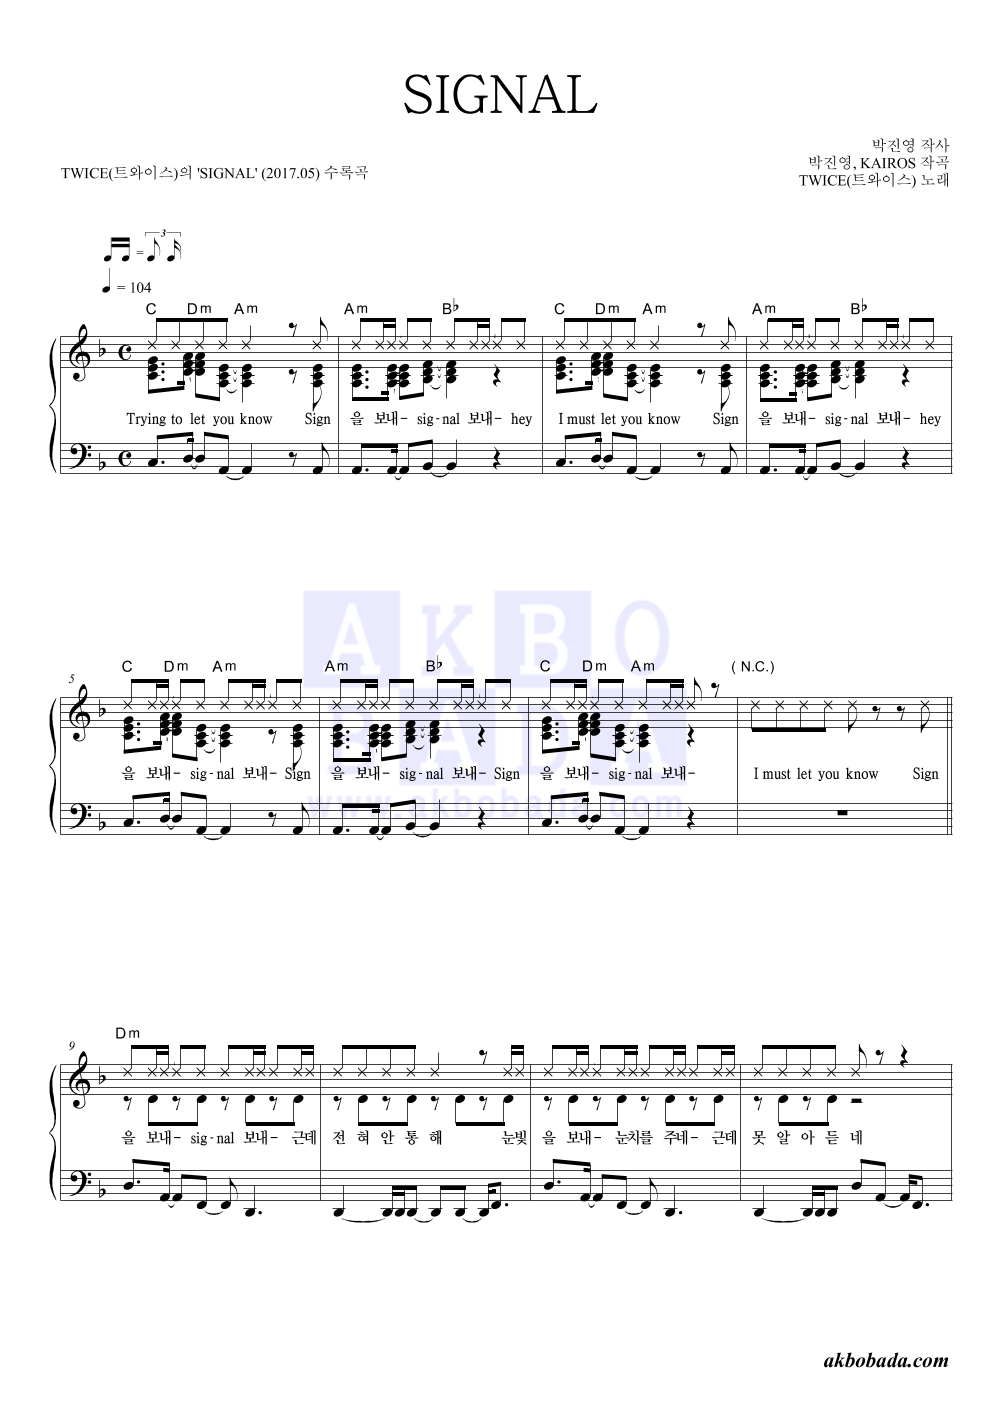 트와이스 - SIGNAL 피아노 2단 악보 